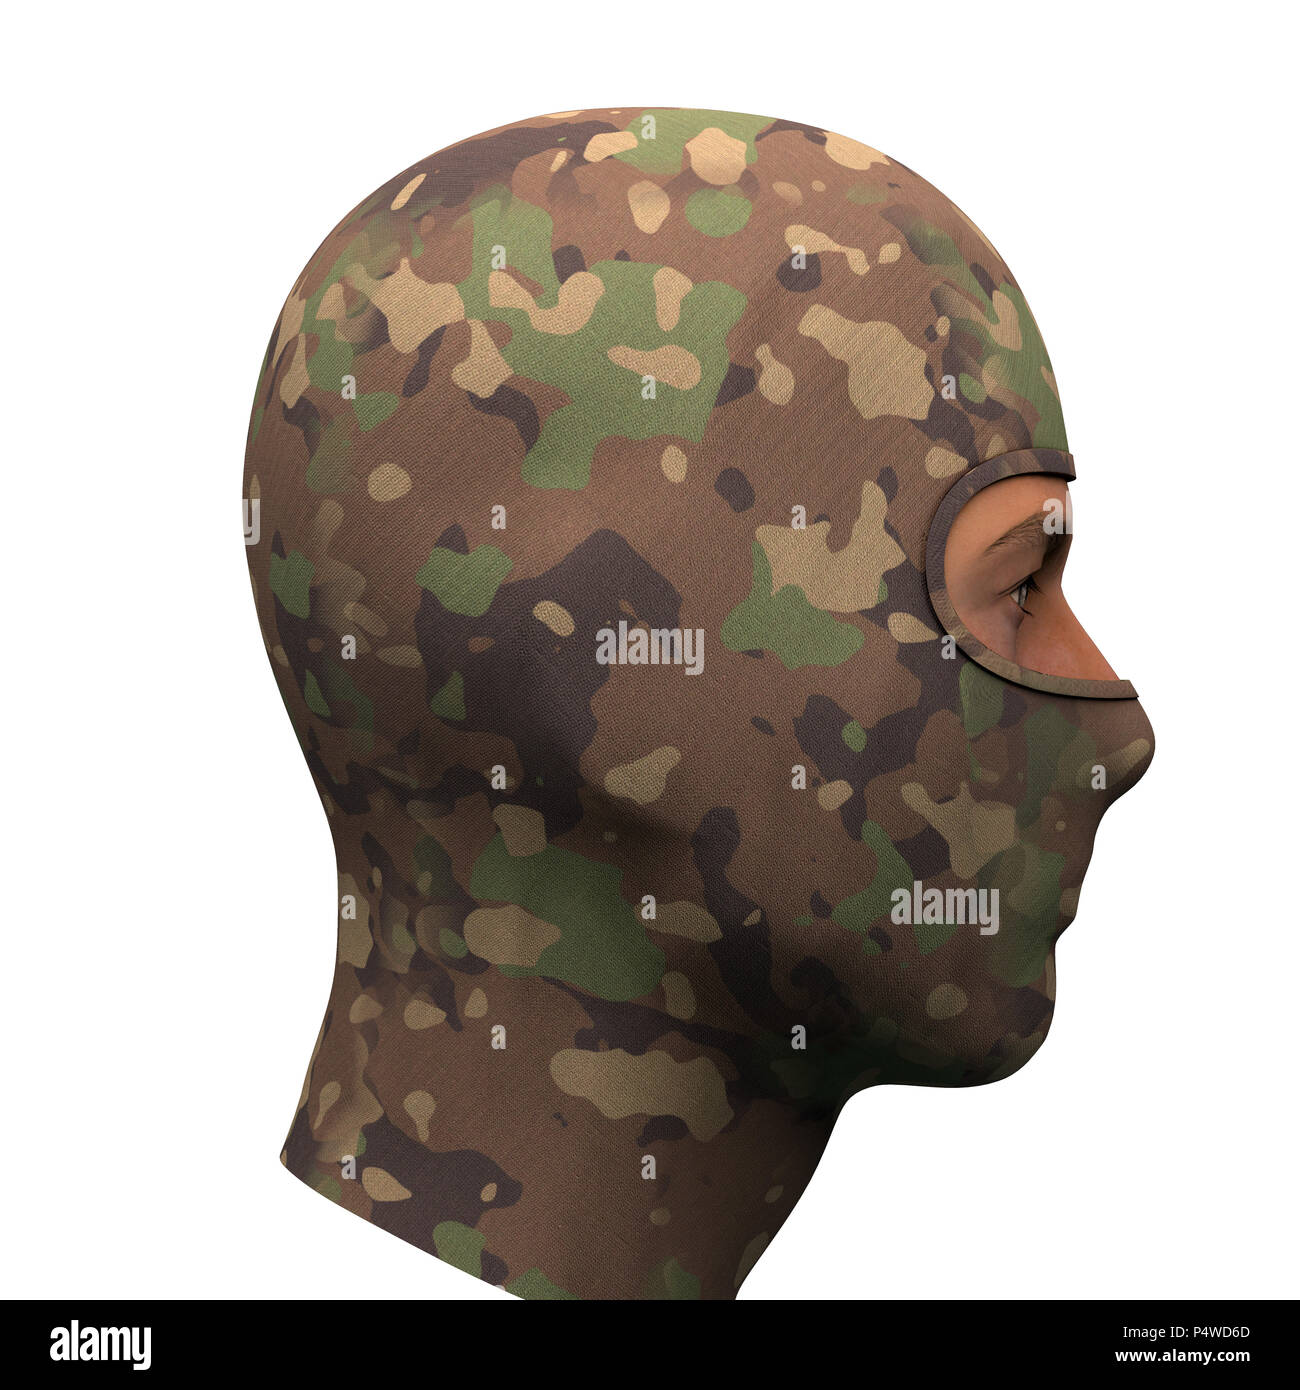 Camo Balaclava mask. Ausrüstung für Militär und Spezialeinheiten oder  Winter Sport. Camouflage woodland Farbe. Von der Seite. 3D-Render Abbildung  isoliert auf w Stockfotografie - Alamy